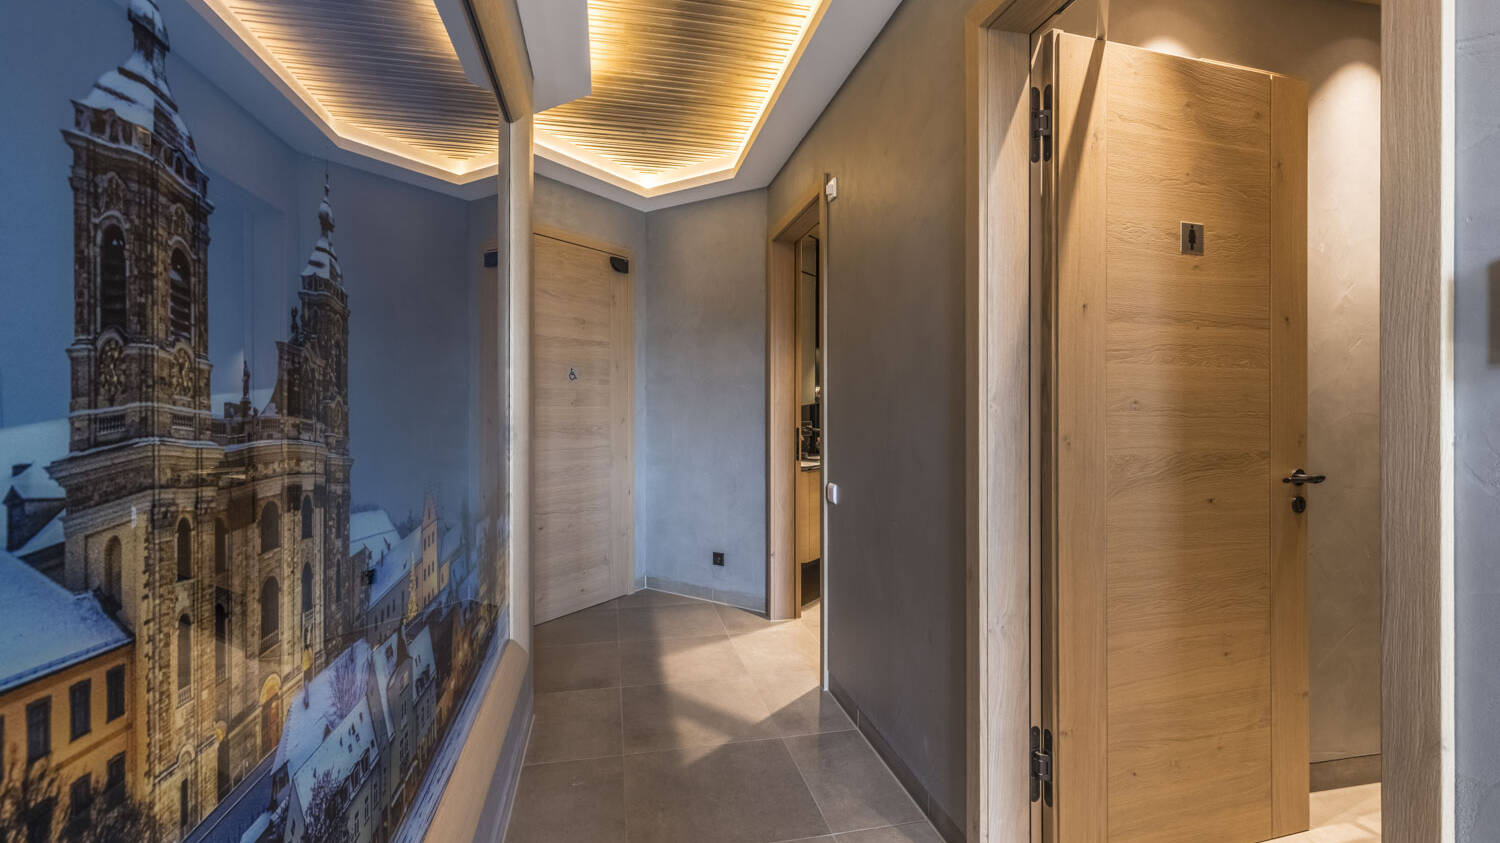 Auch im Gang zum WC-Bereich führt ein Zusammenspiel aus Holz, Stein und elegantem Licht zu einem dynamischen Raumgefühl.  